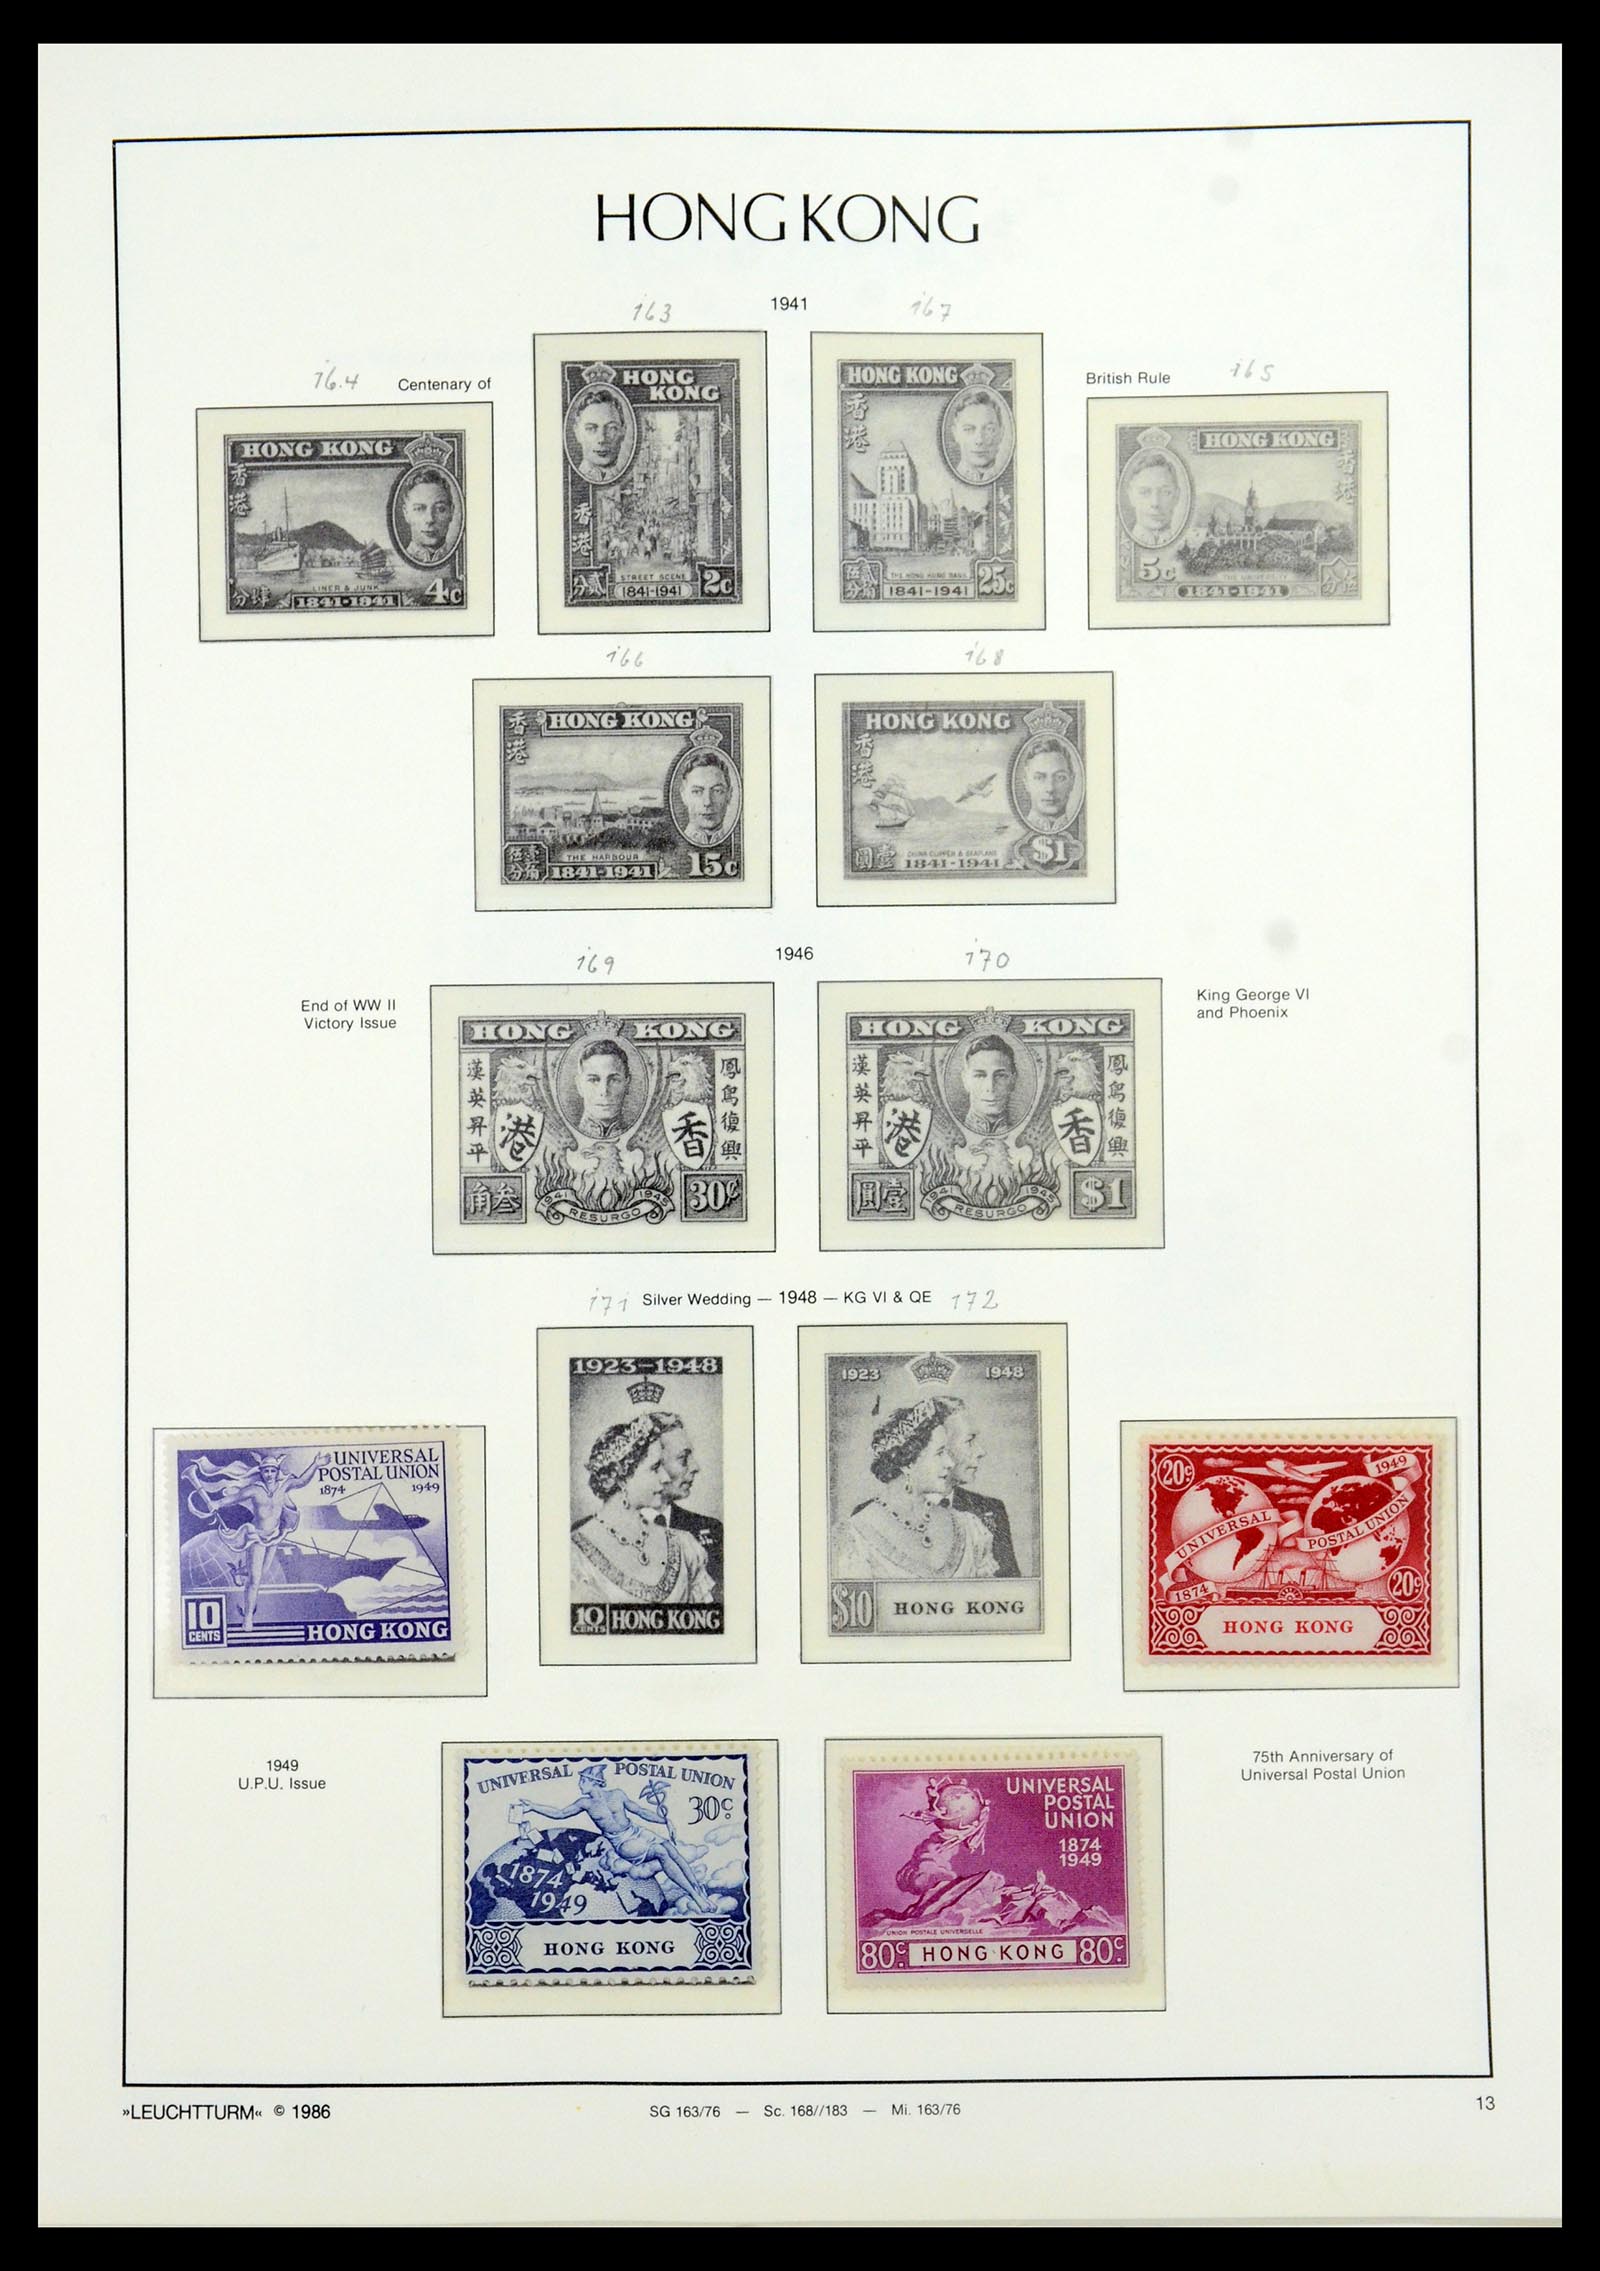 35997 001 - Stamp collection 35997 Hong Kong 1949-1996.